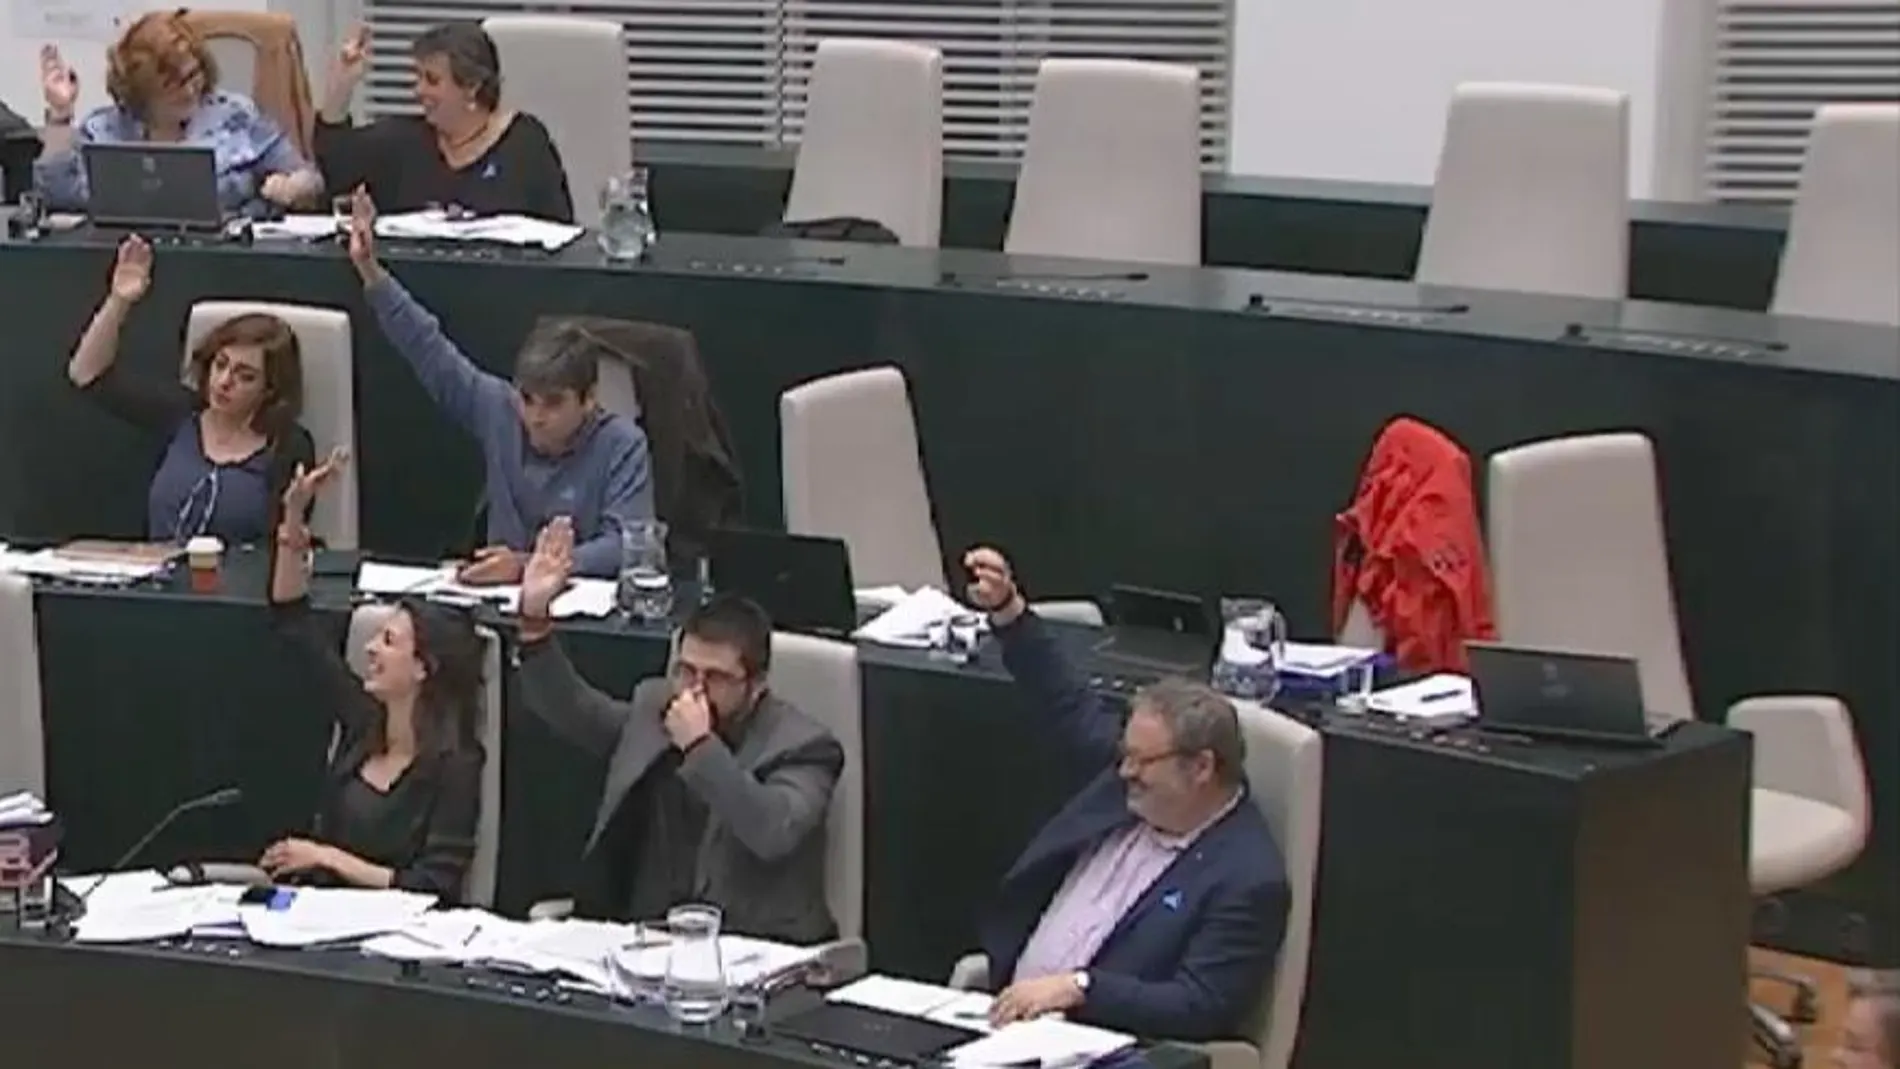 El delegado de Economía y Hacienda, Carlos Sánchez Mato, se ha tapado la nariz mientras sostenía el brazo en alto